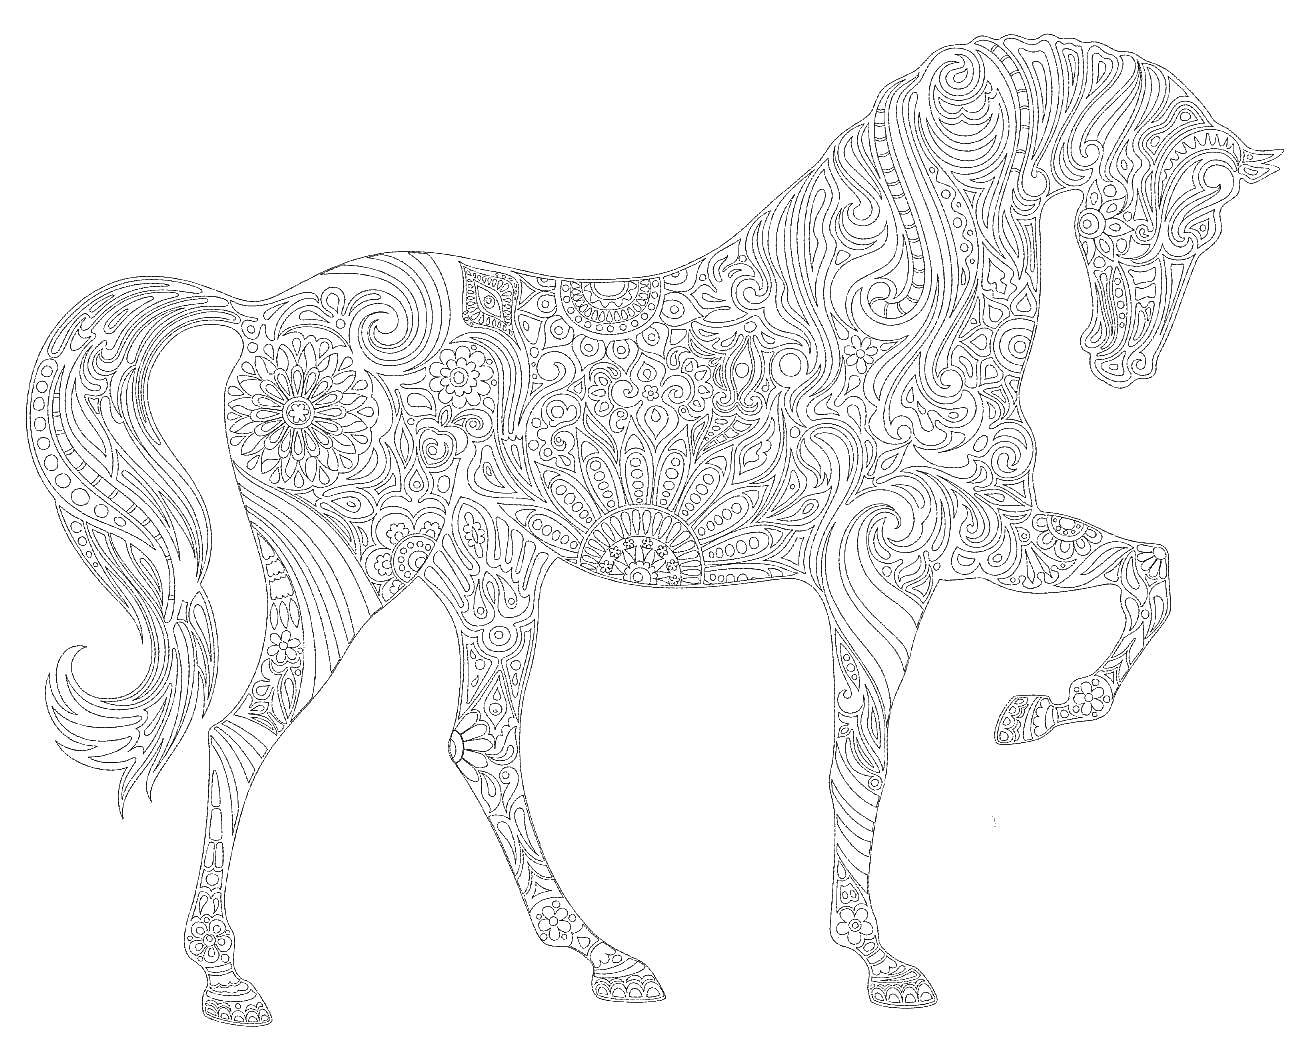 Раскраска Лошадь антистресс с узорами, включая цветы и абстрактные элементы